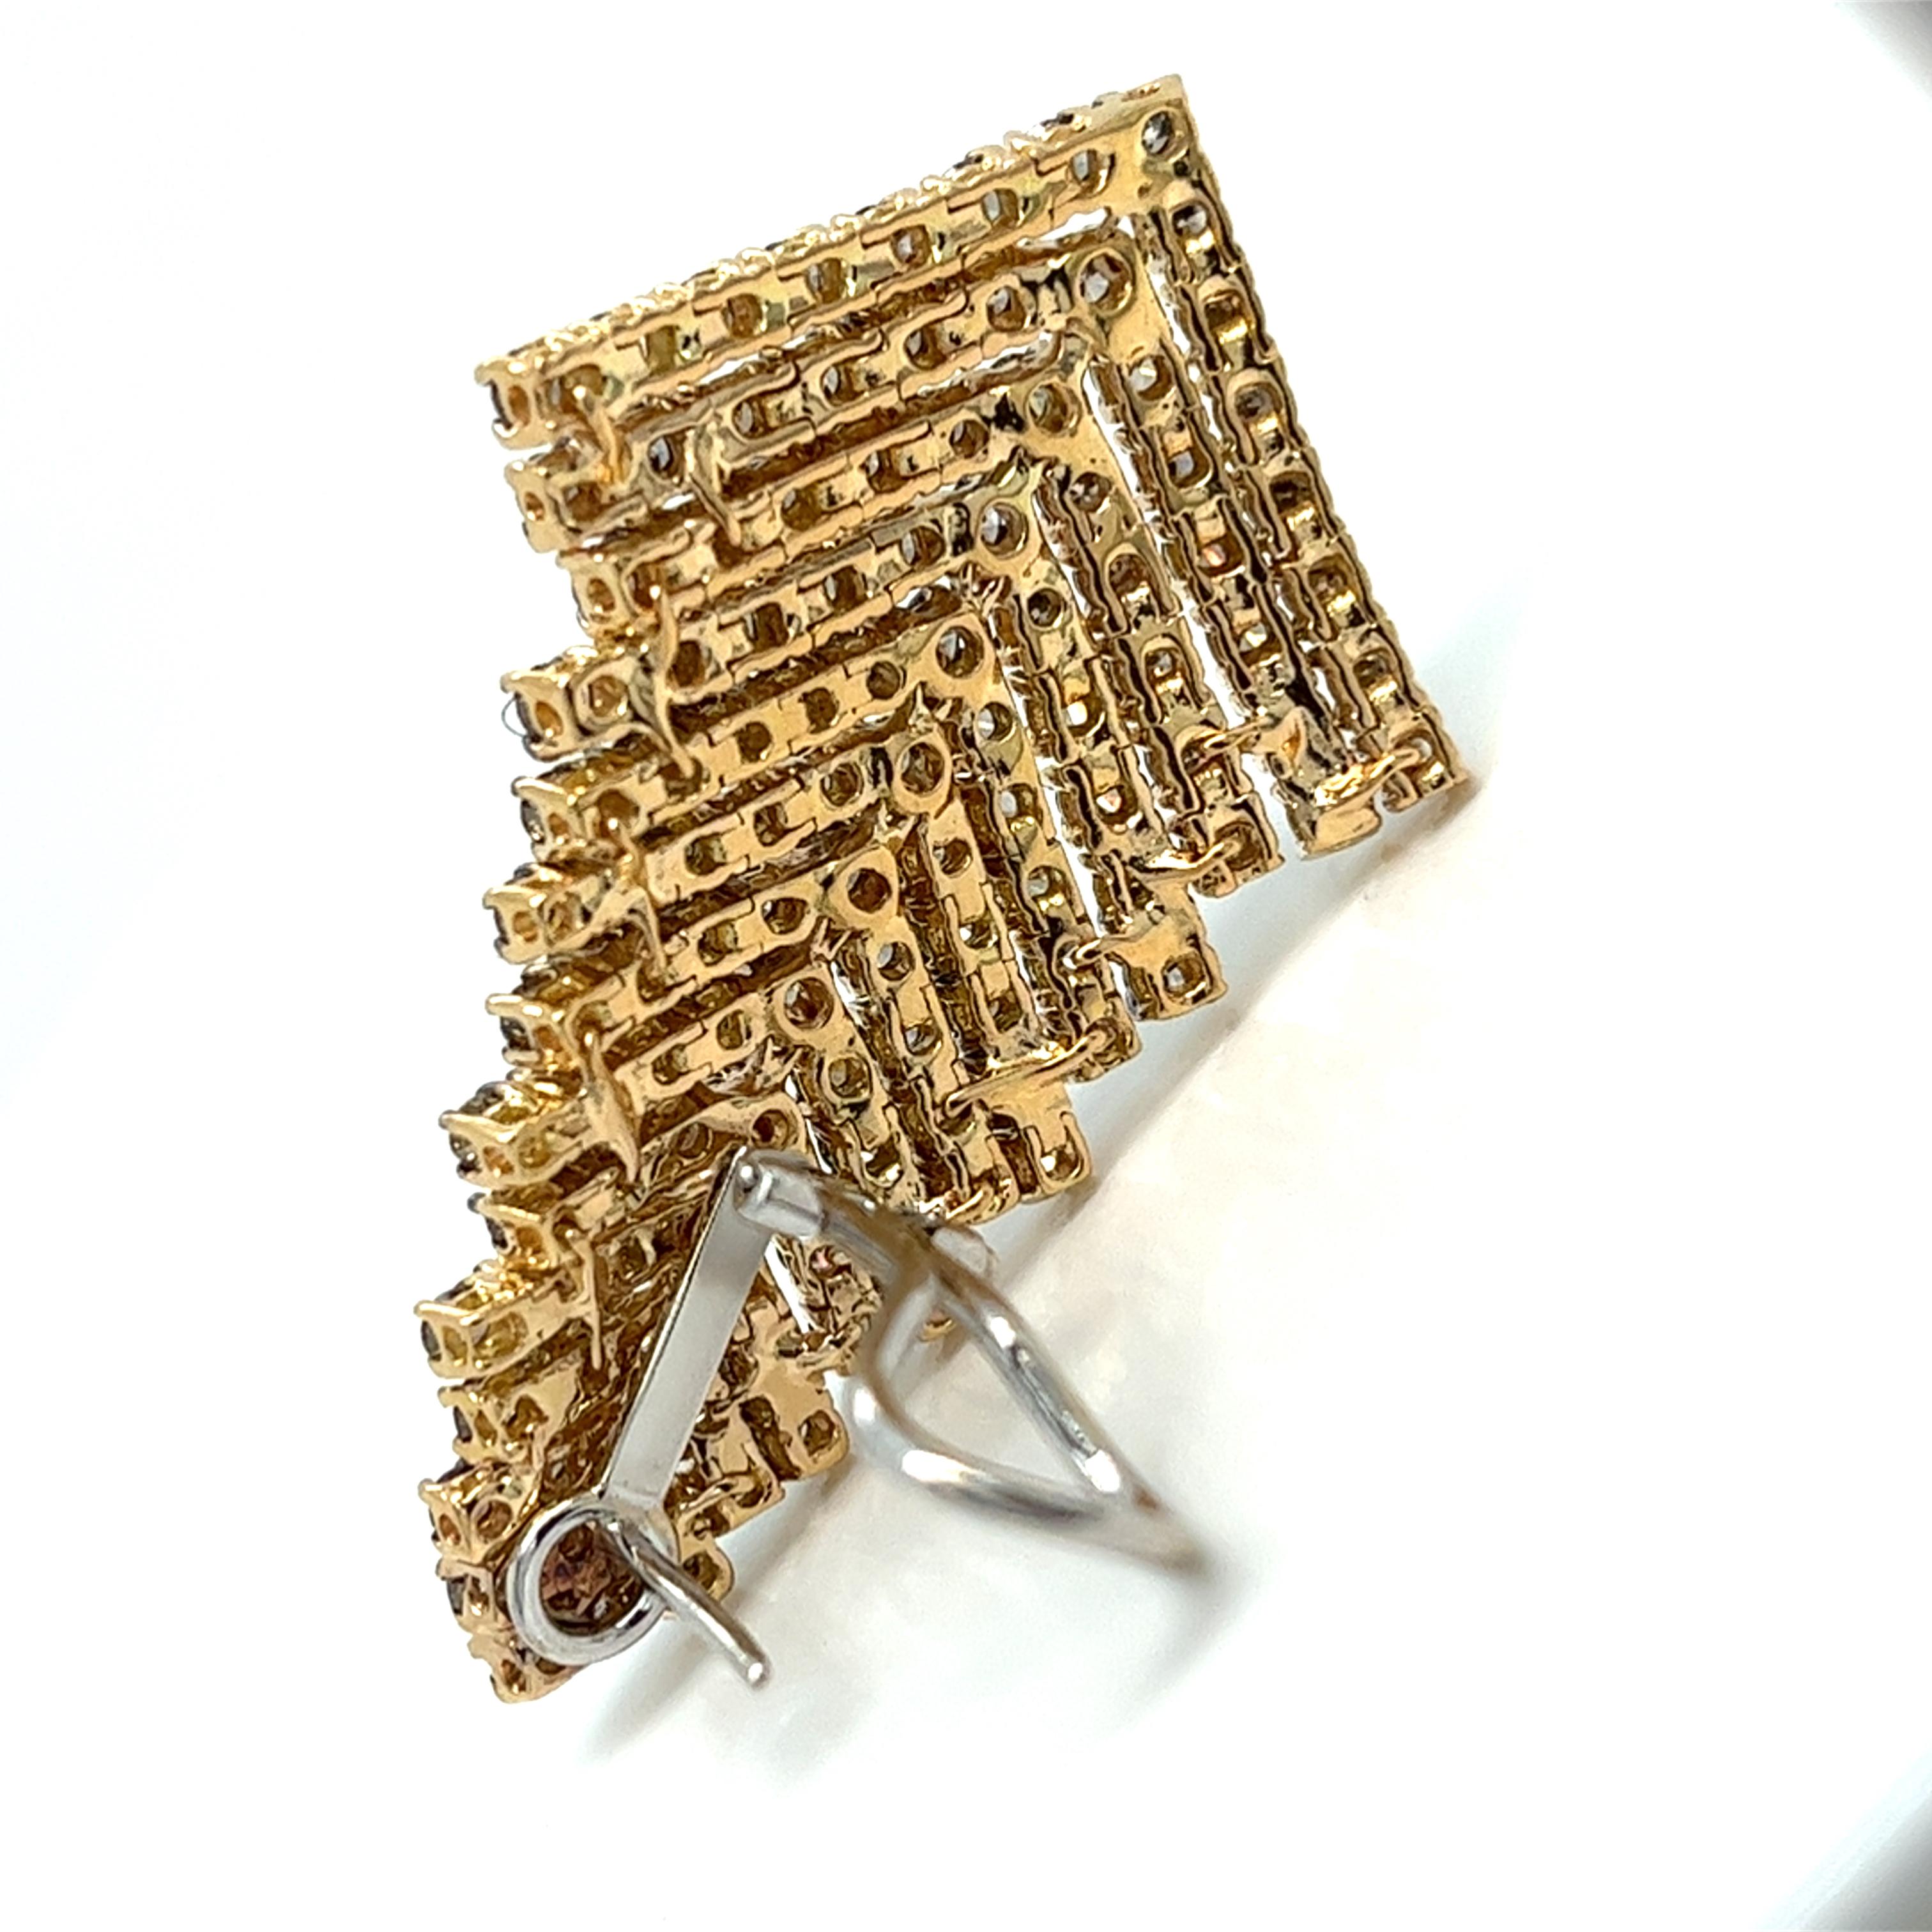 Diese Ohrringe sind aus 18-karätigem Gold gefertigt und mit natürlichen, champagnerfarbenen Diamanten besetzt, die ein atemberaubendes Kaskadenmuster bilden. Sie bieten eine schöne Mischung aus Eleganz und Wärme mit einer einzigartigen